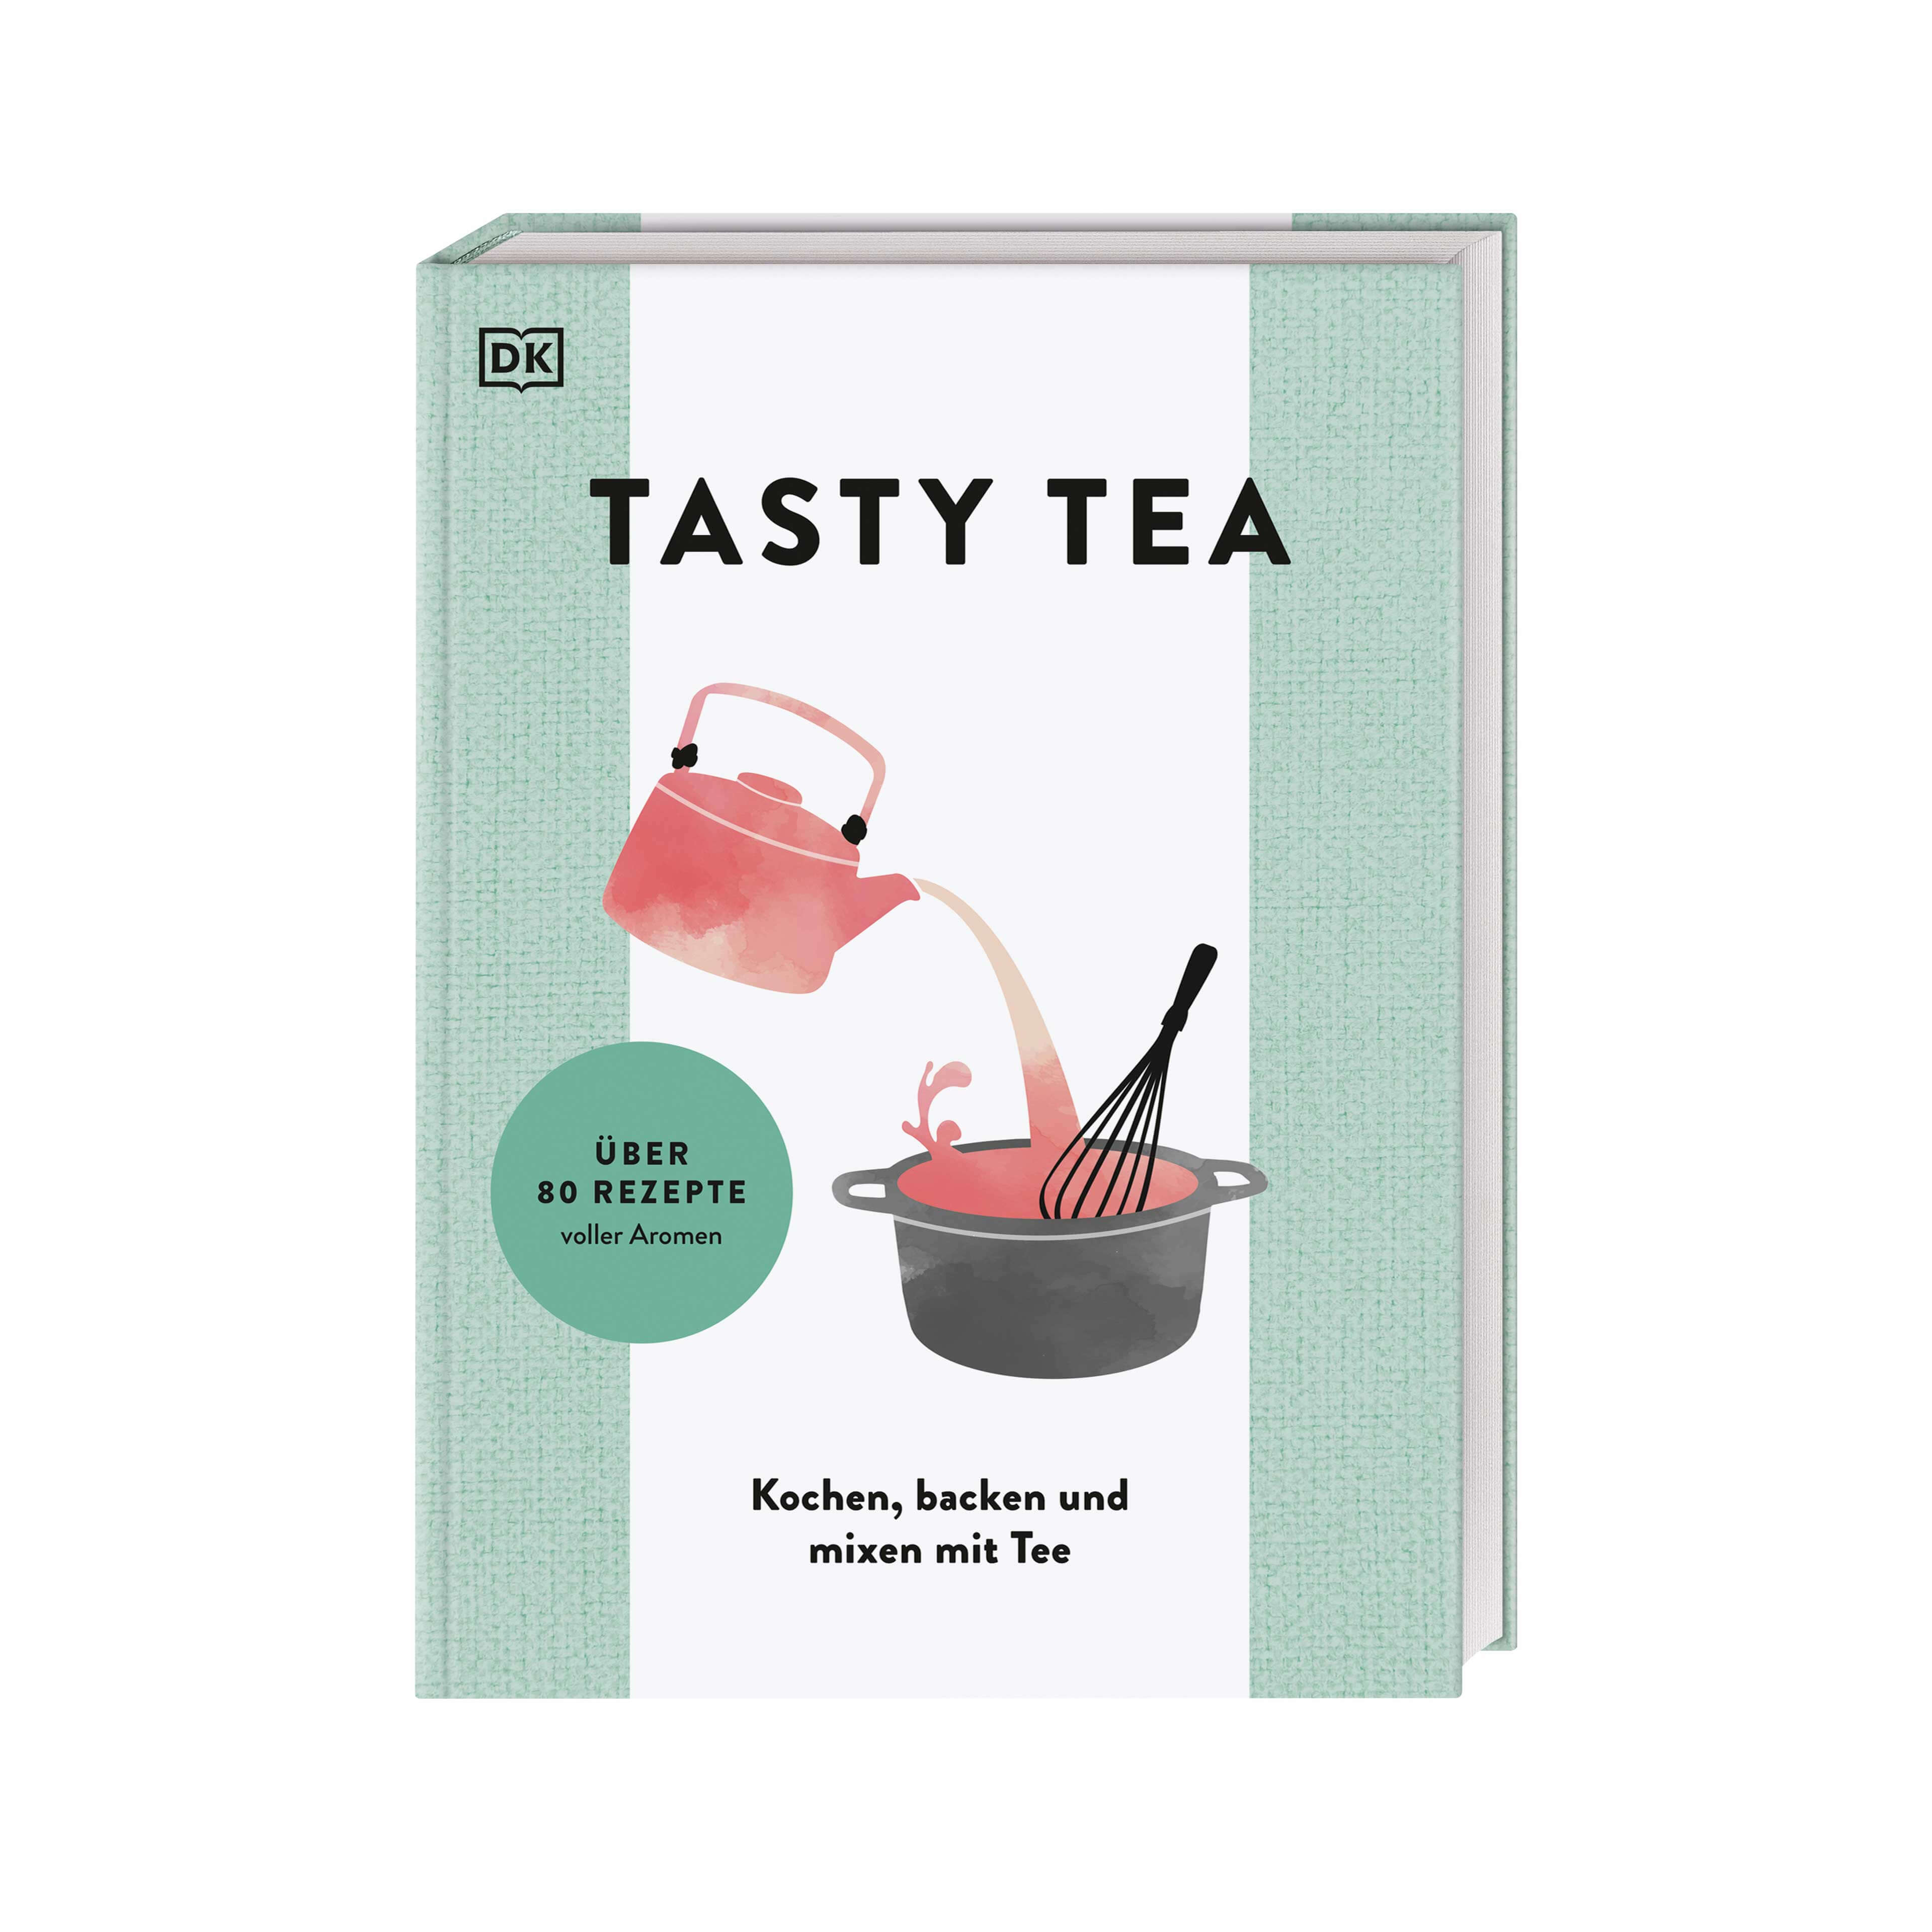 TASTY TEA - Le livre de recettes de thé